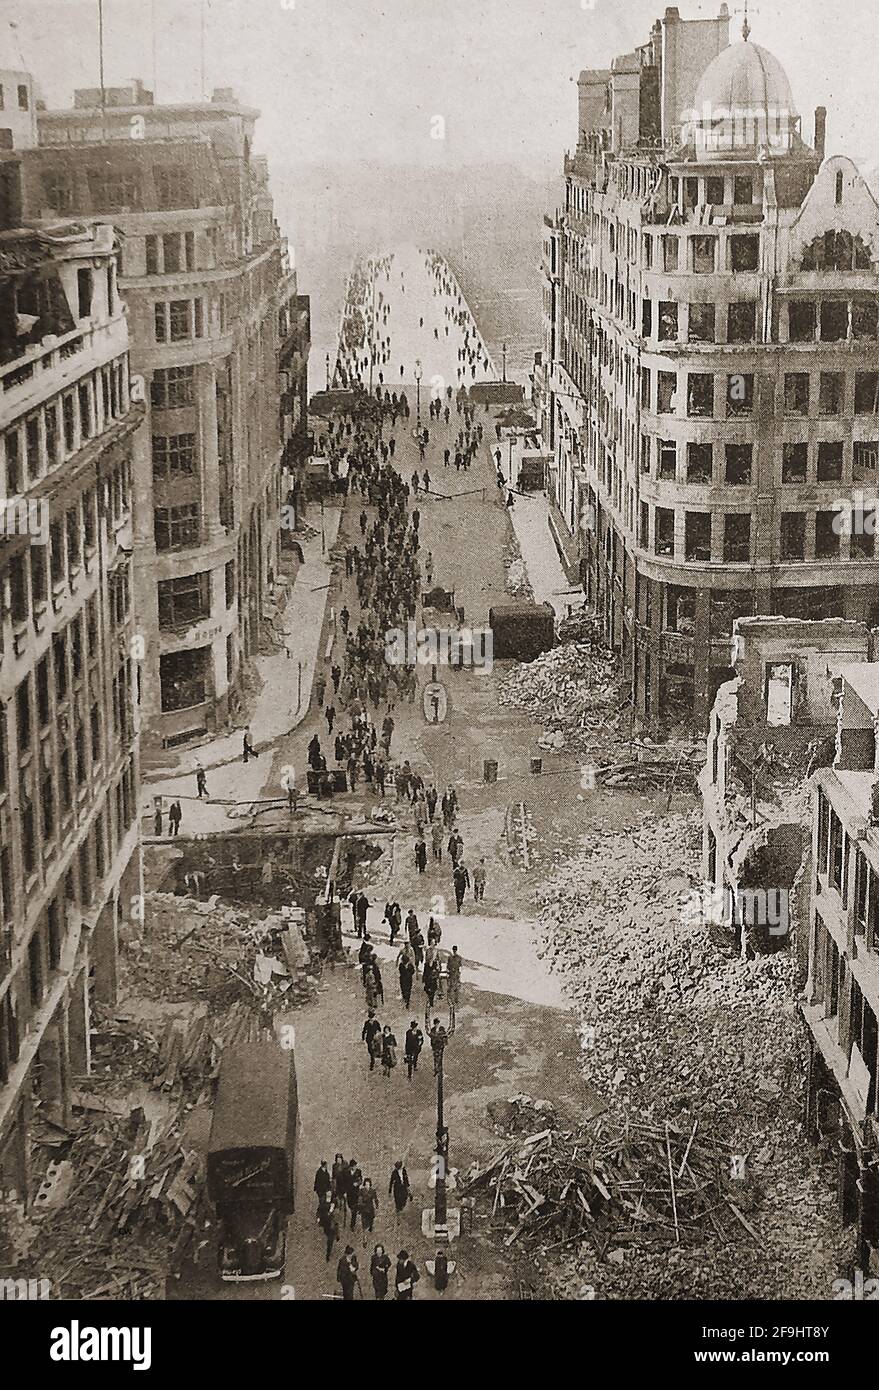 Deuxième Guerre mondiale - raids allemands à l'attentat à la bombe à Londres, Royaume-Uni (Blitz) en septembre 1940 - UNE vue de l'approche du pont de Londres peu après un RAID matinal par des bombardiers allemands Banque D'Images